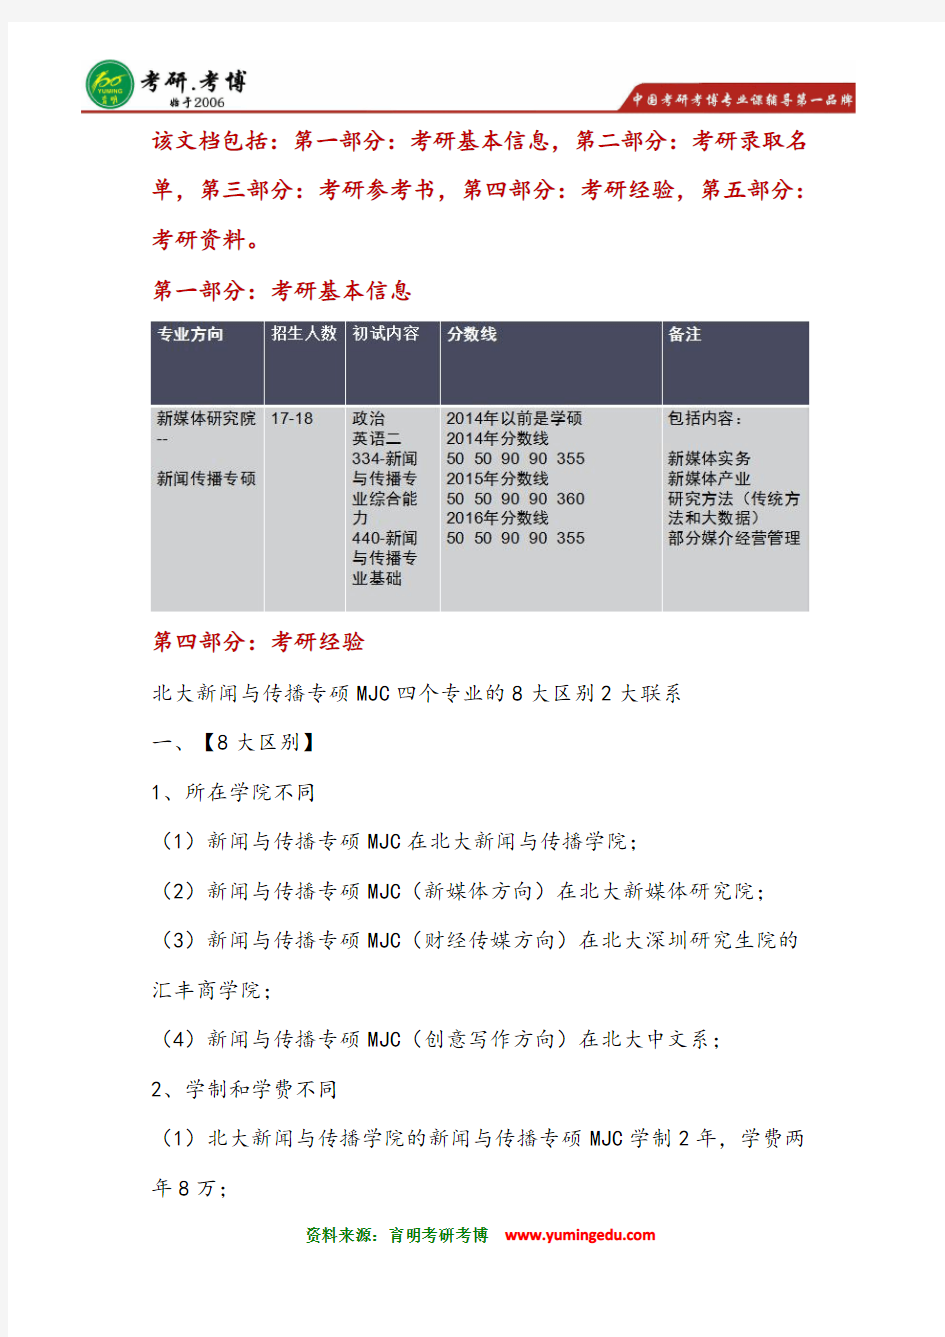 2016年北京大学新媒体研究院新闻传播专硕MJC考研经验--北大四大学院的联系与区别